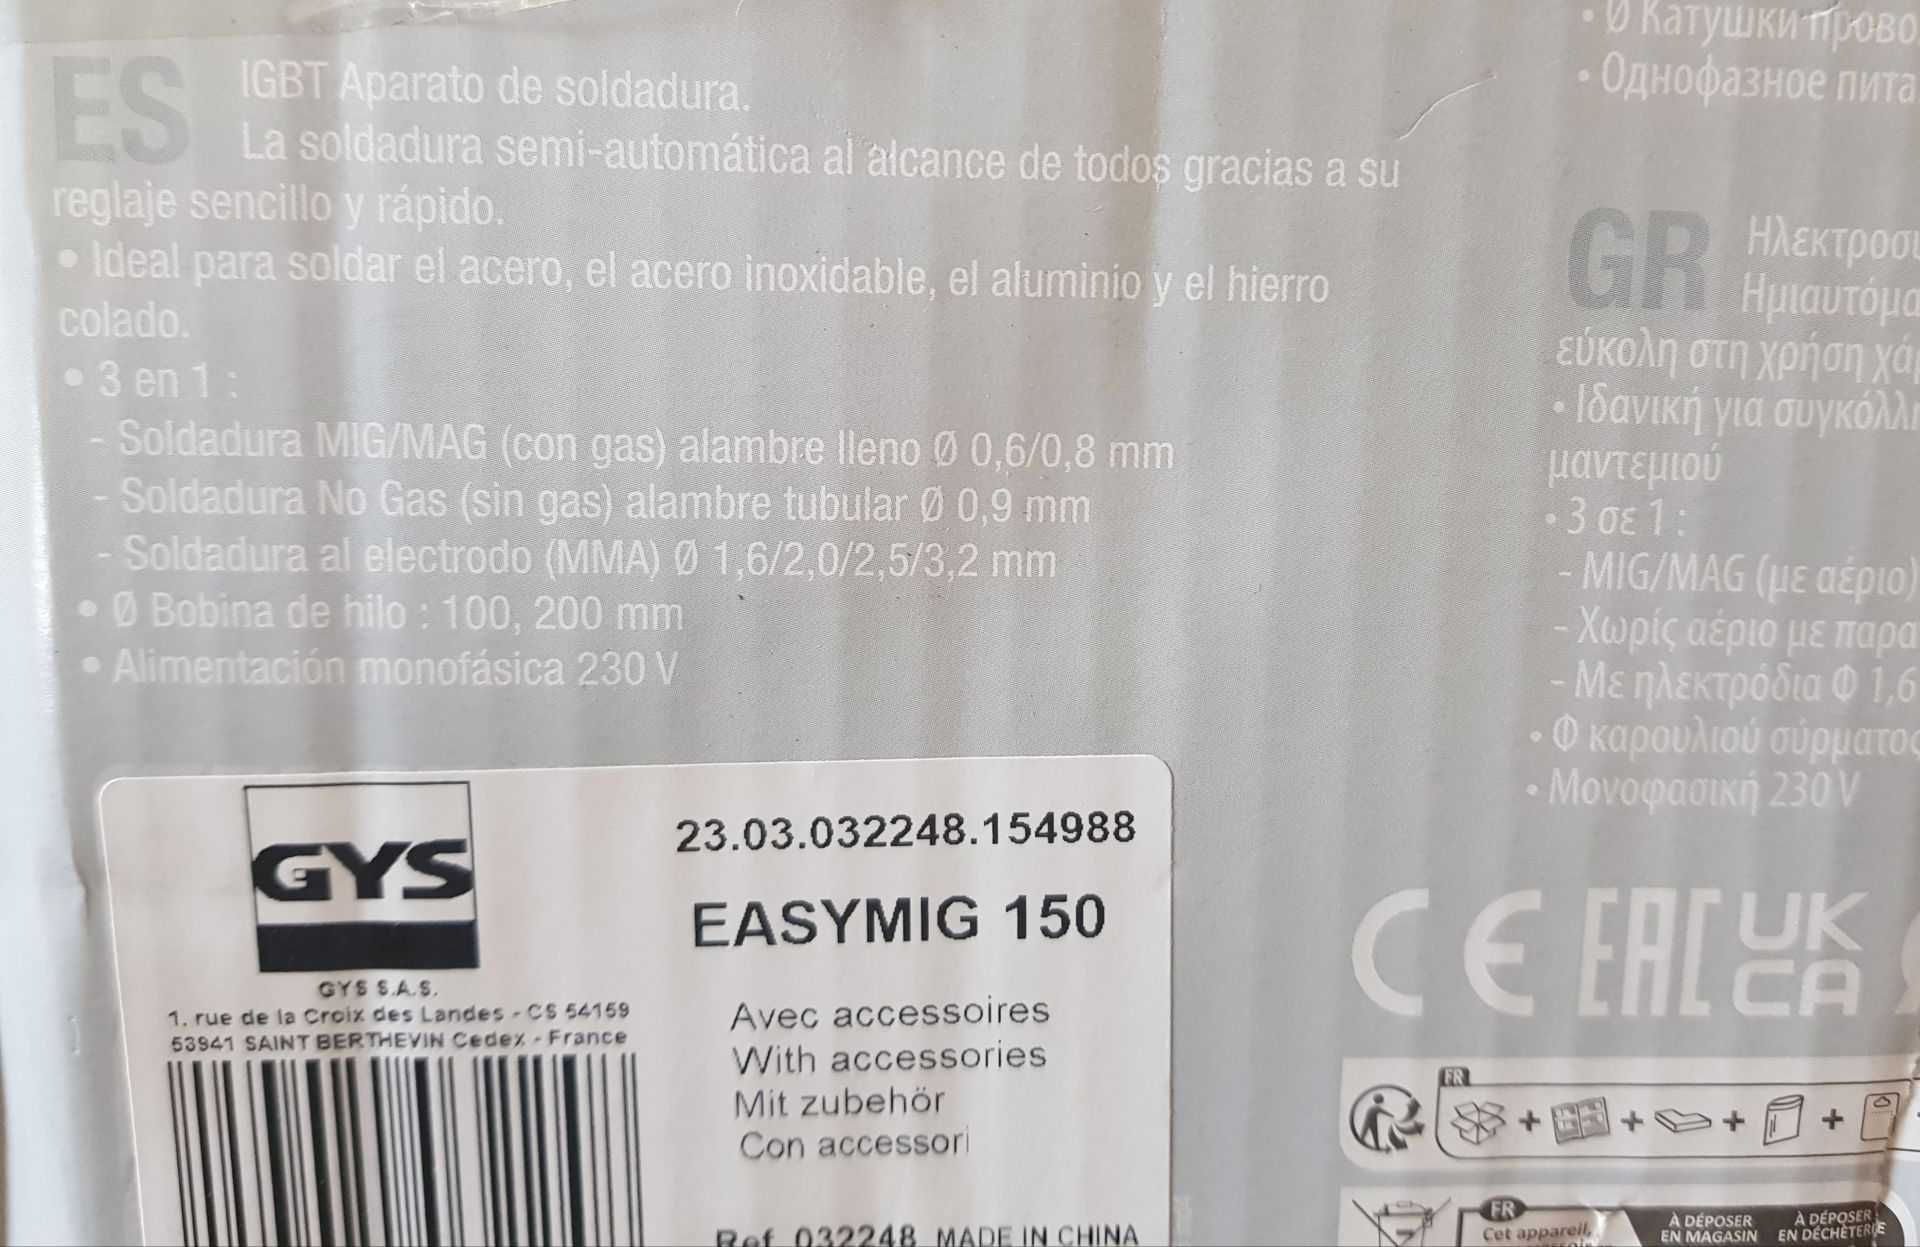 Spawarka GYS 032248 "easymig 150", 230 V